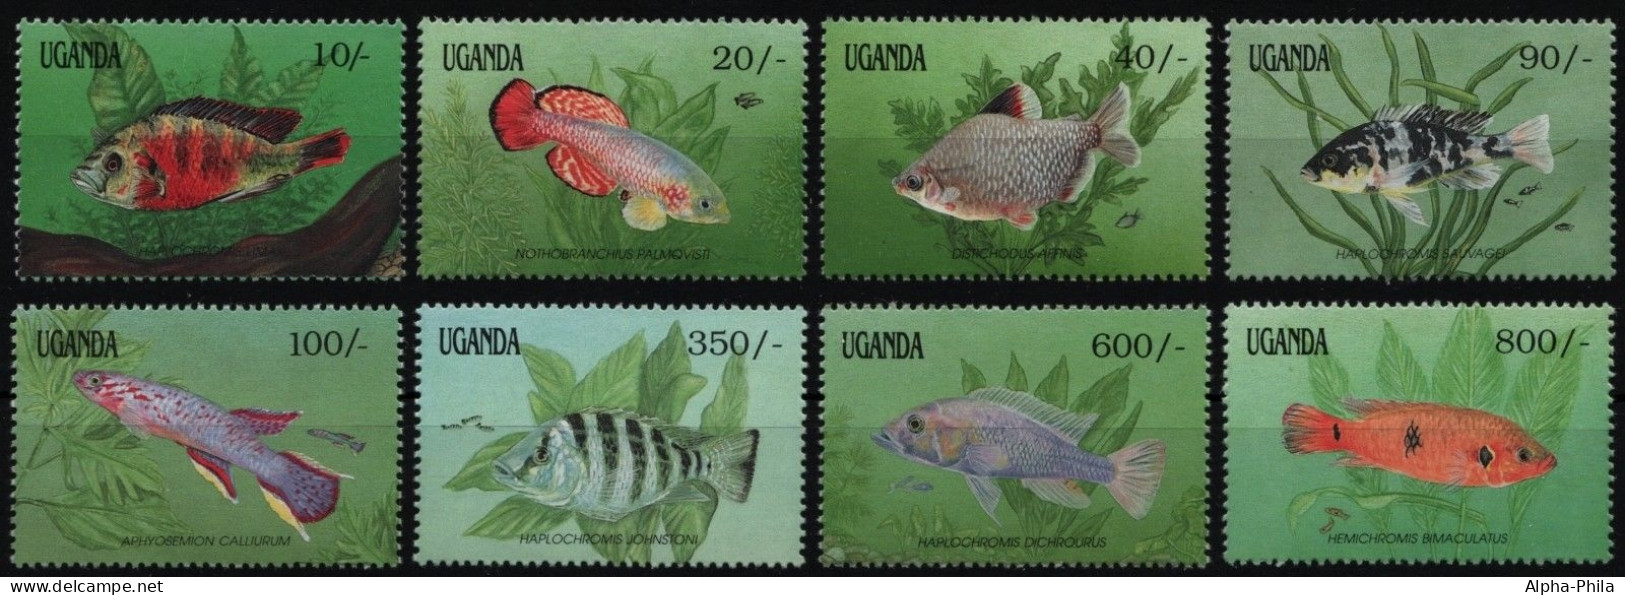 Uganda 1991 - Mi-Nr. 873-880 ** - MNH - Fische / Fish - Oeganda (1962-...)